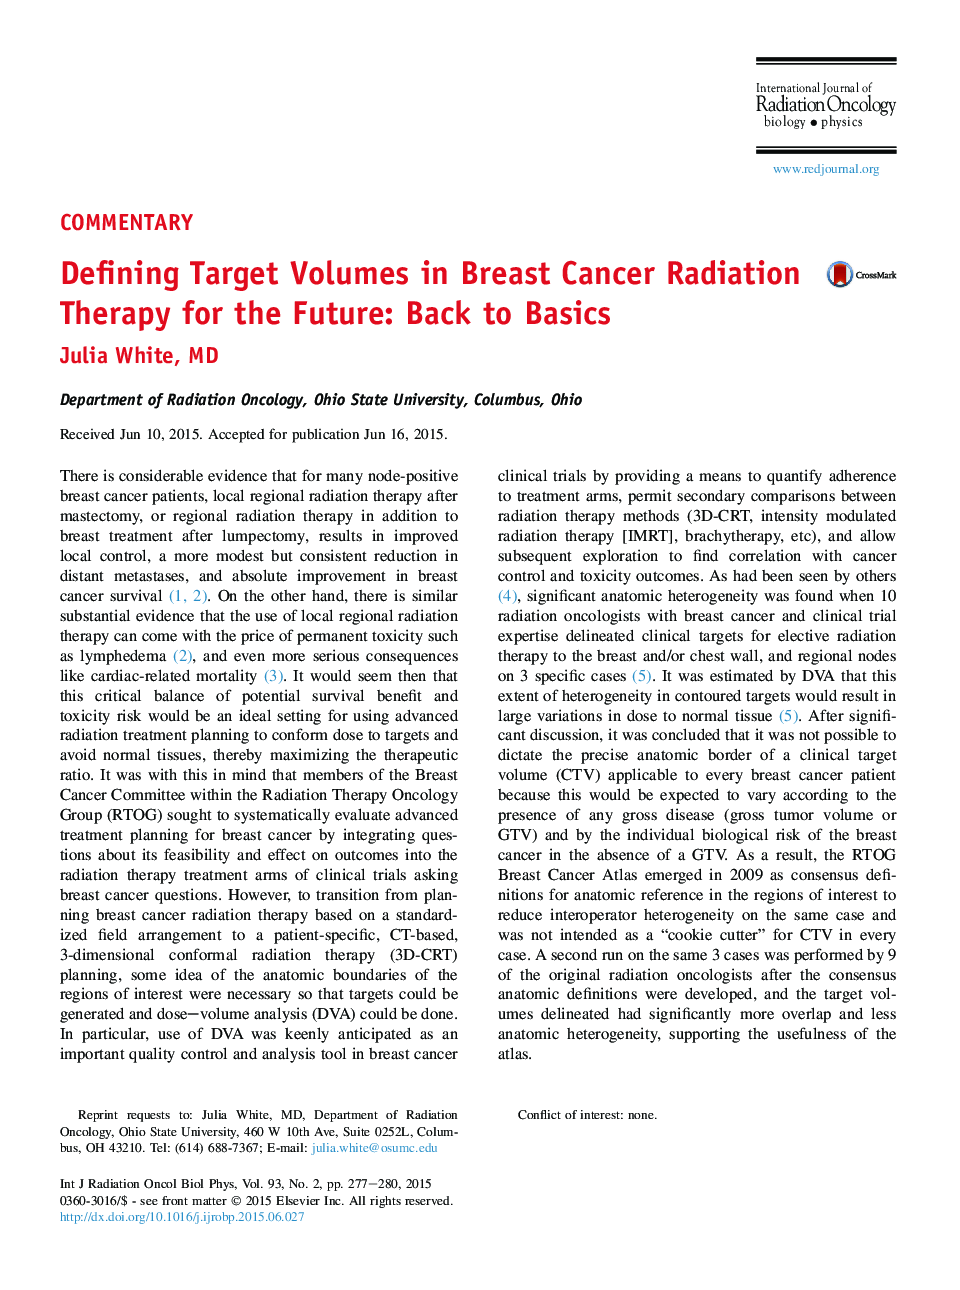 تعریف حجم هدف در درمان سرطان پستان برای آینده: بازگشت به مبانی 